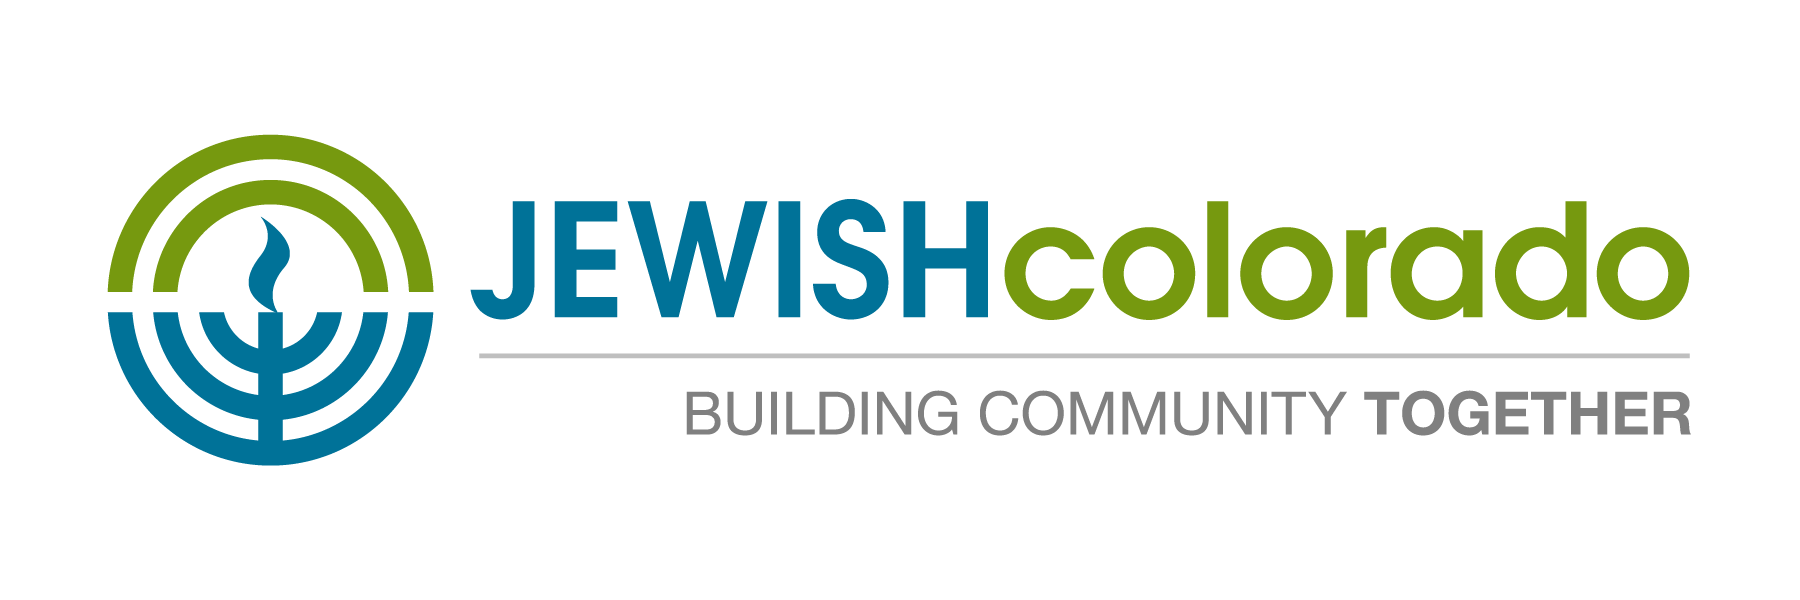 JEWISHcolorado - logo